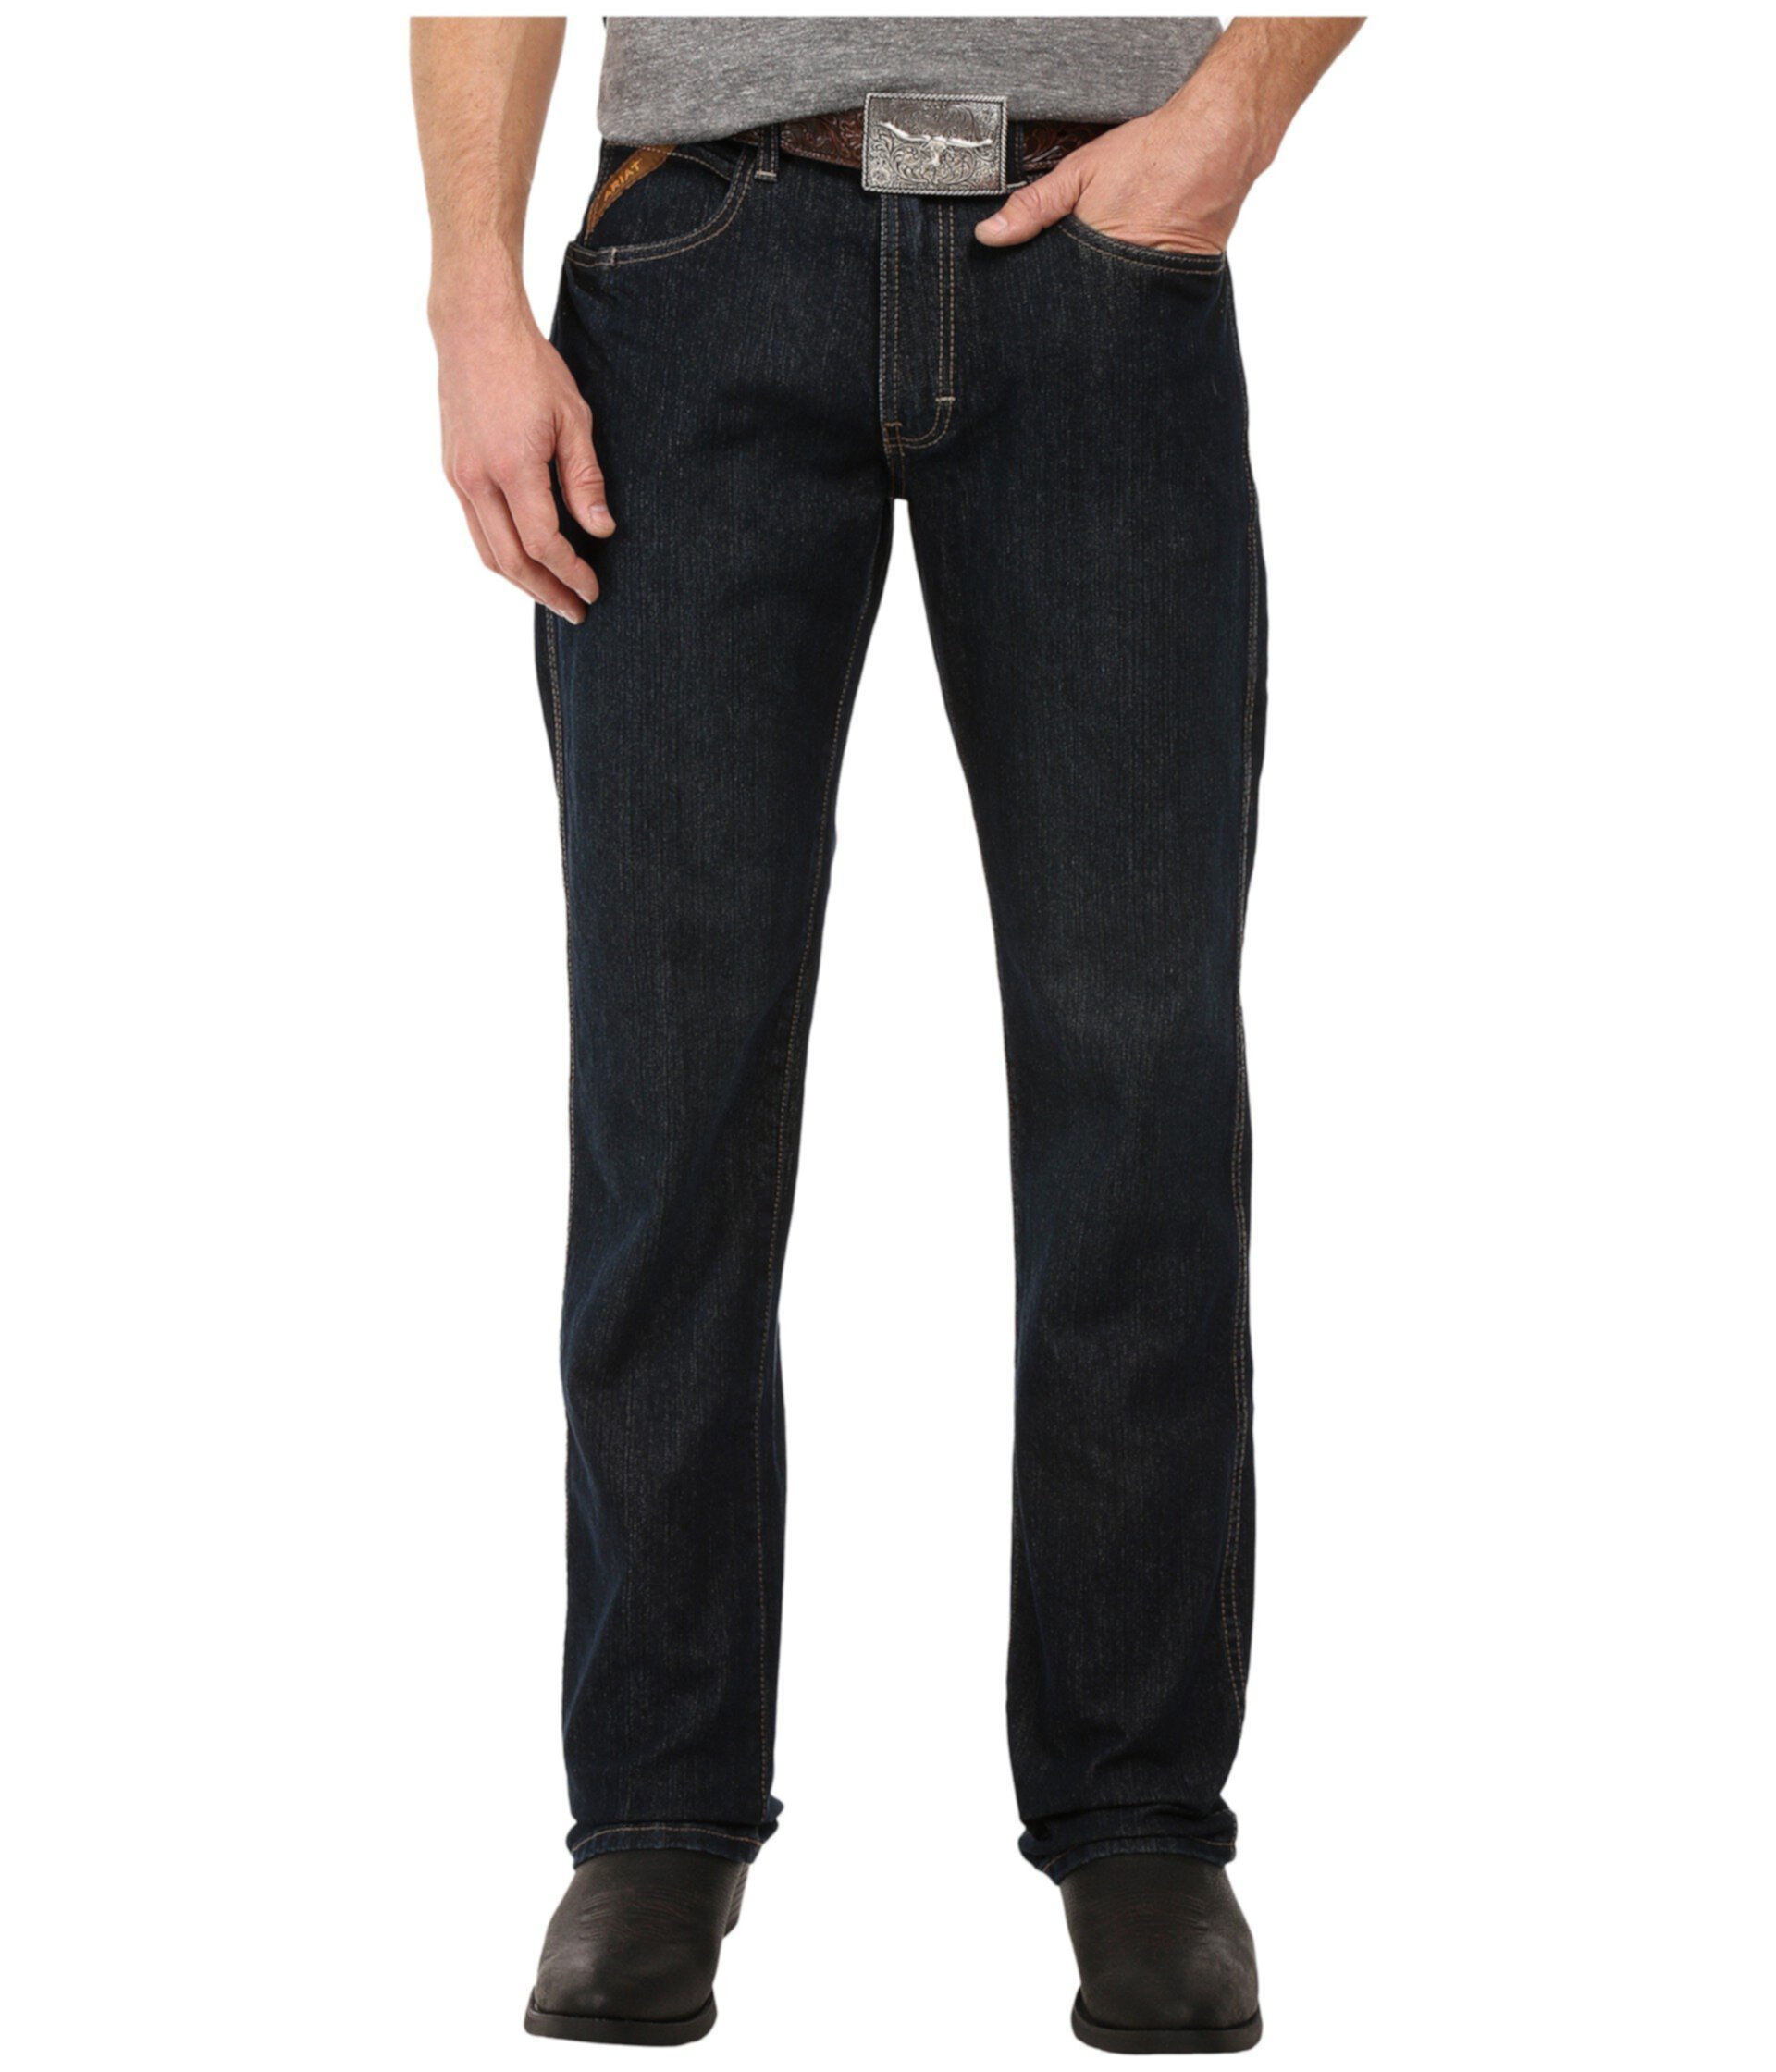 Зауженные прямые джинсы Rebar M5 в цвете Blackstone Ariat